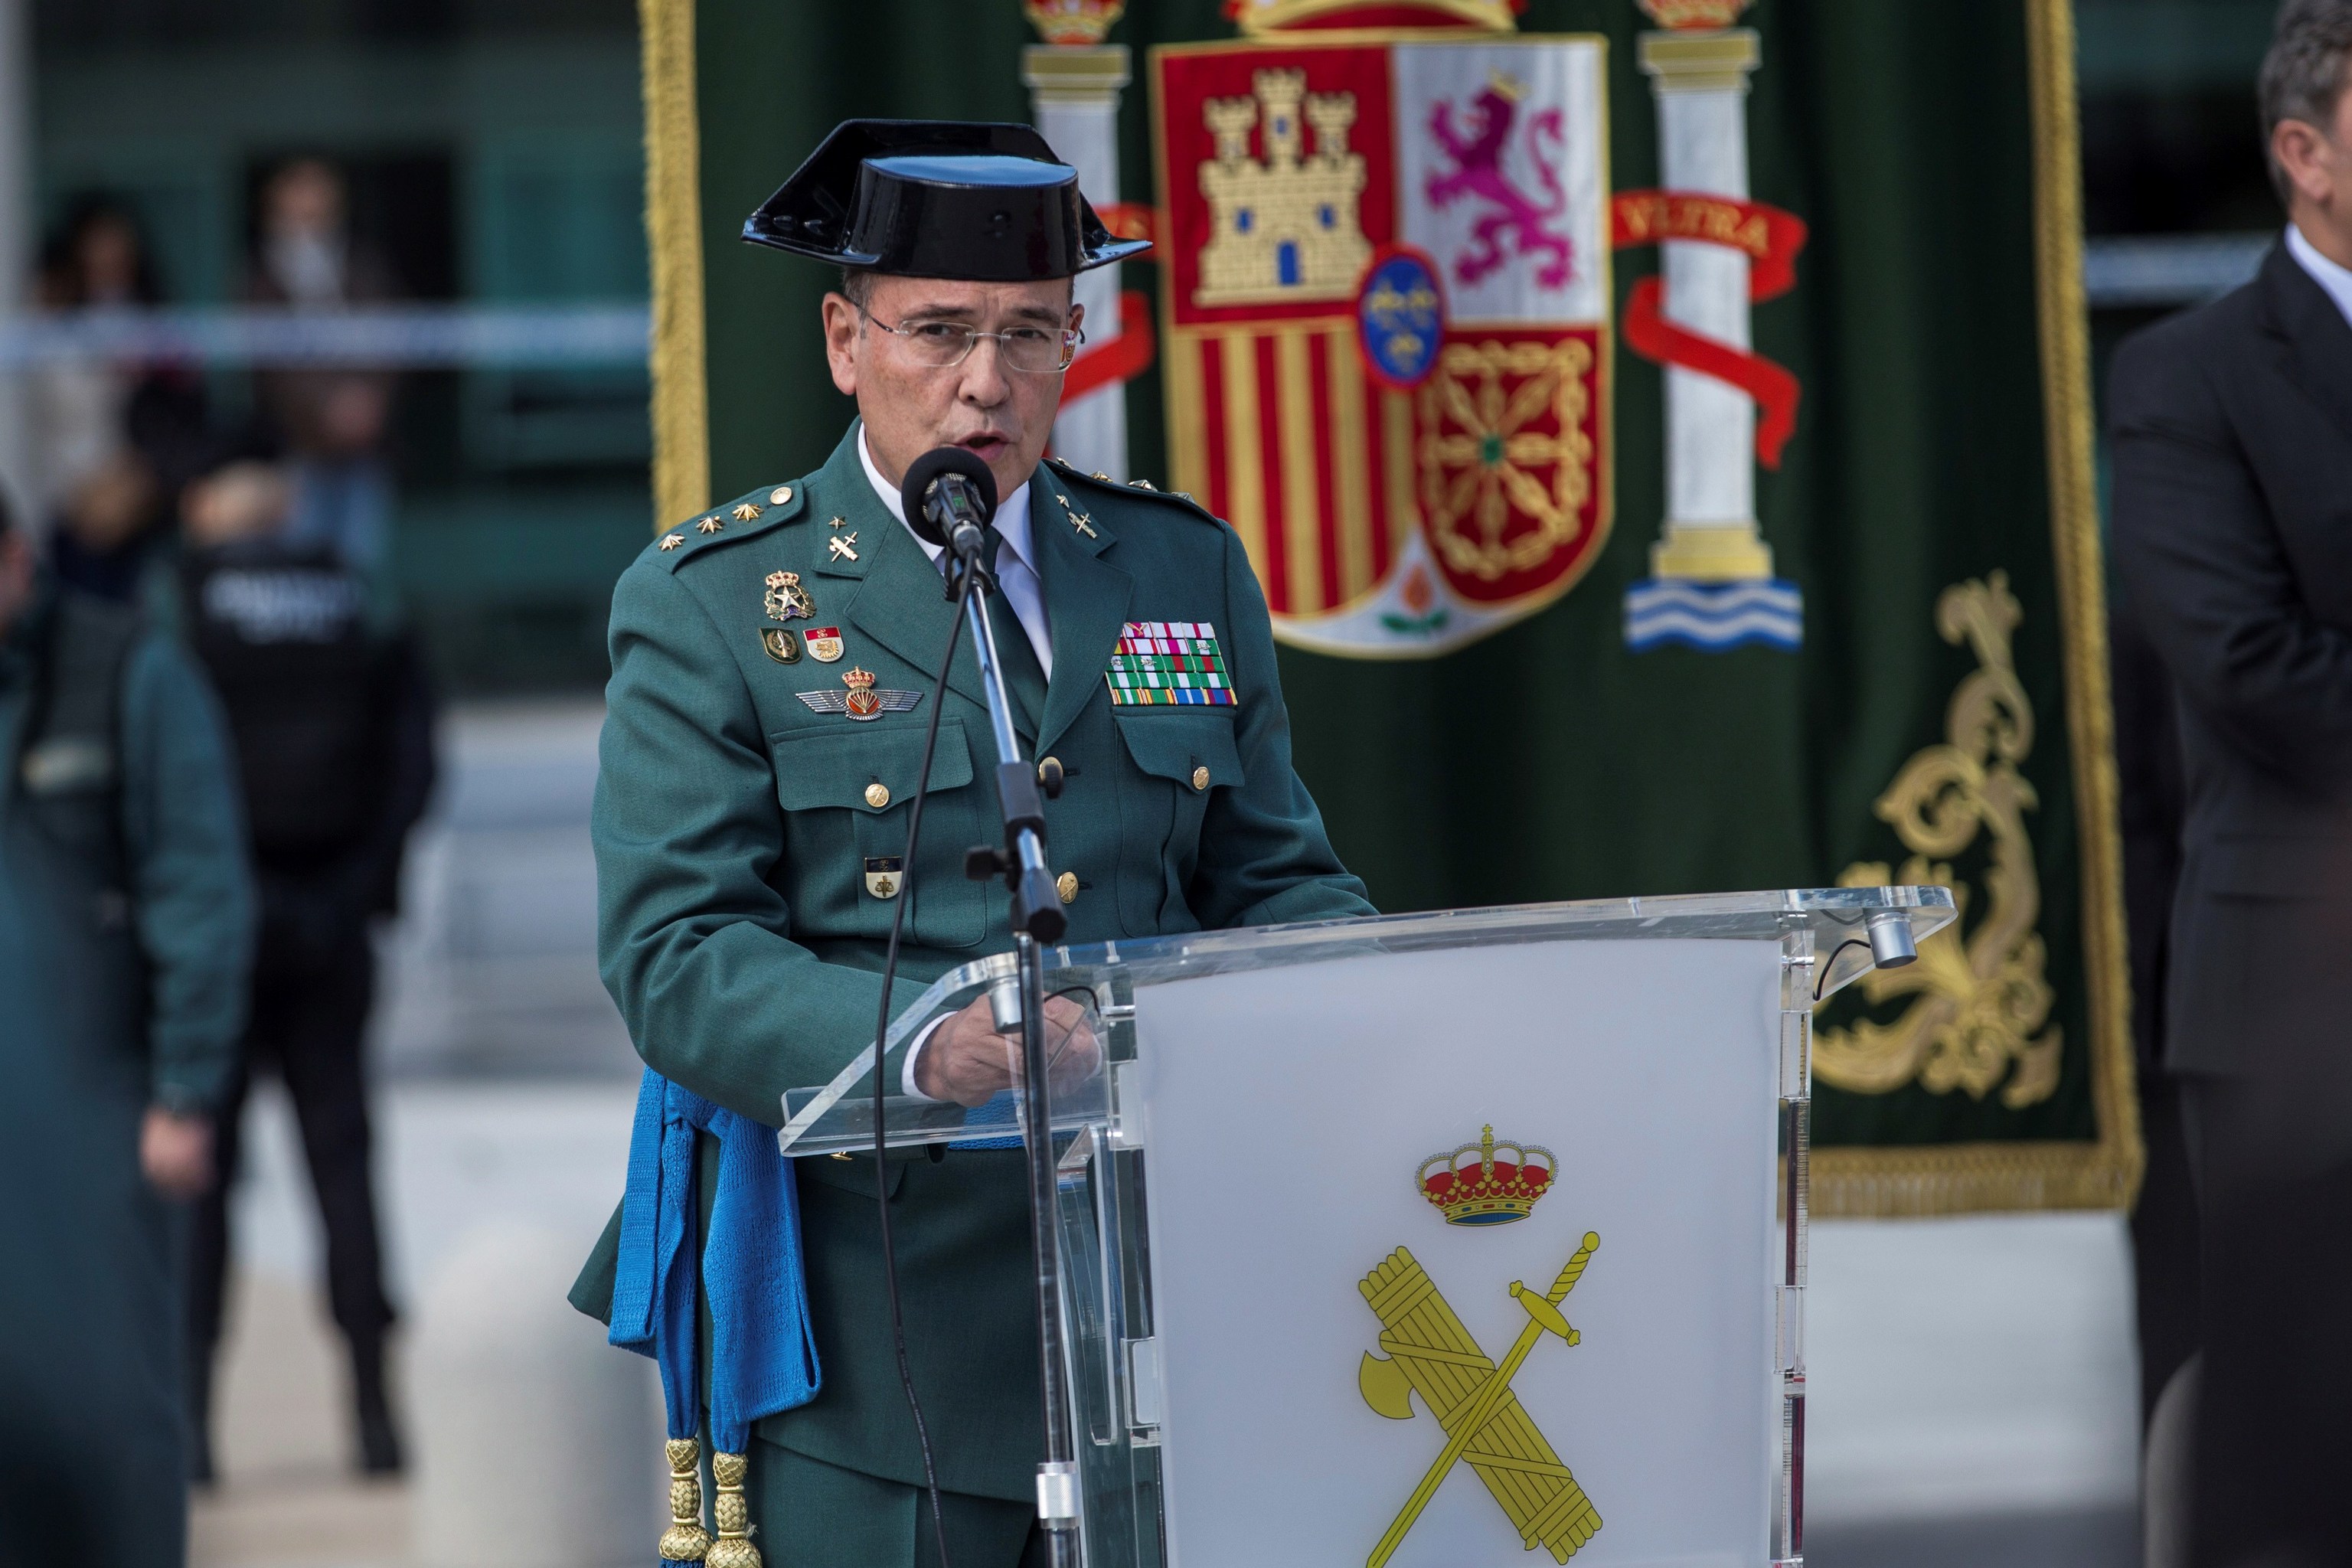 El coronel Diego Pérez de los Cobos, en un acto en la Comandancia de la Guardia Civil de Madrid en 2018.